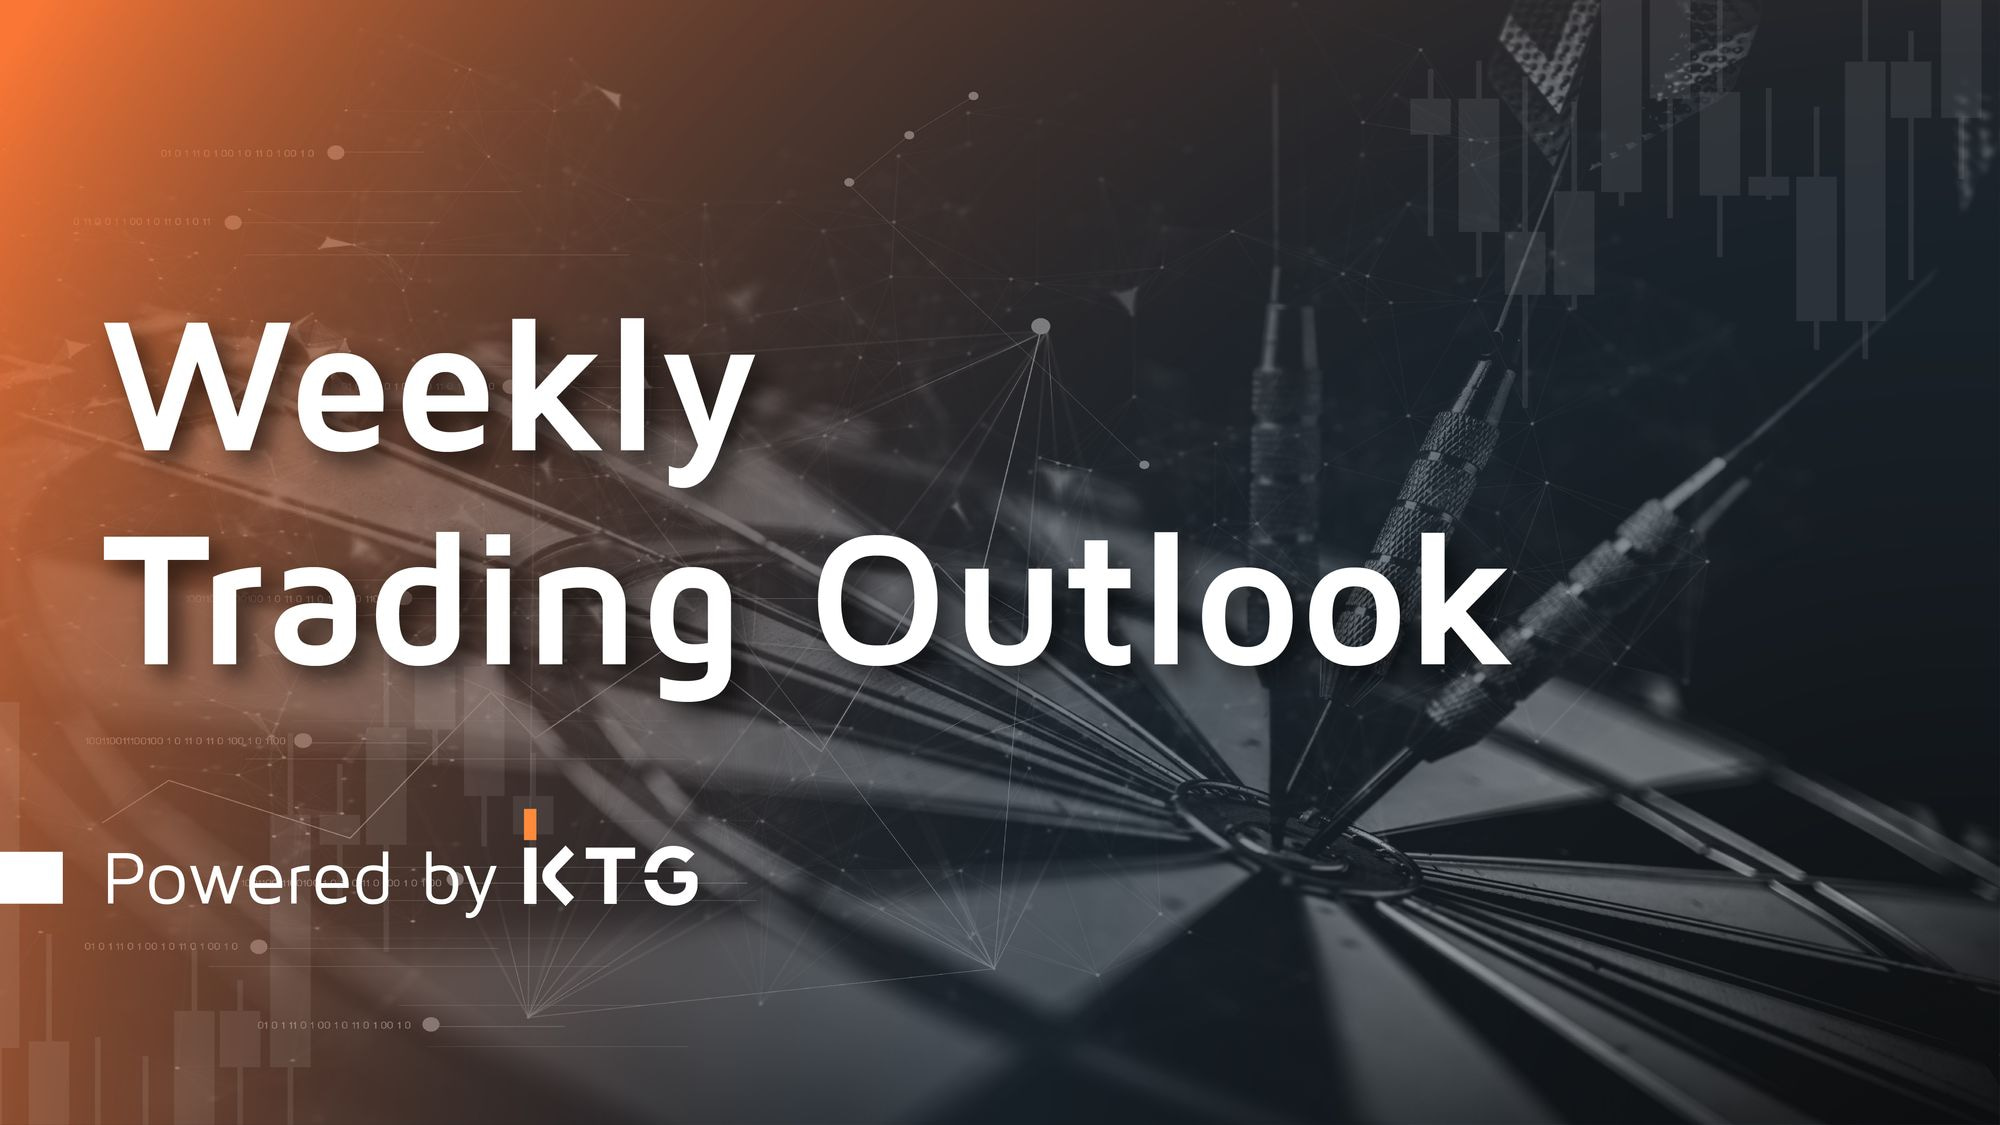 Rest week ensues #TradingOutlook - Powered by KTG